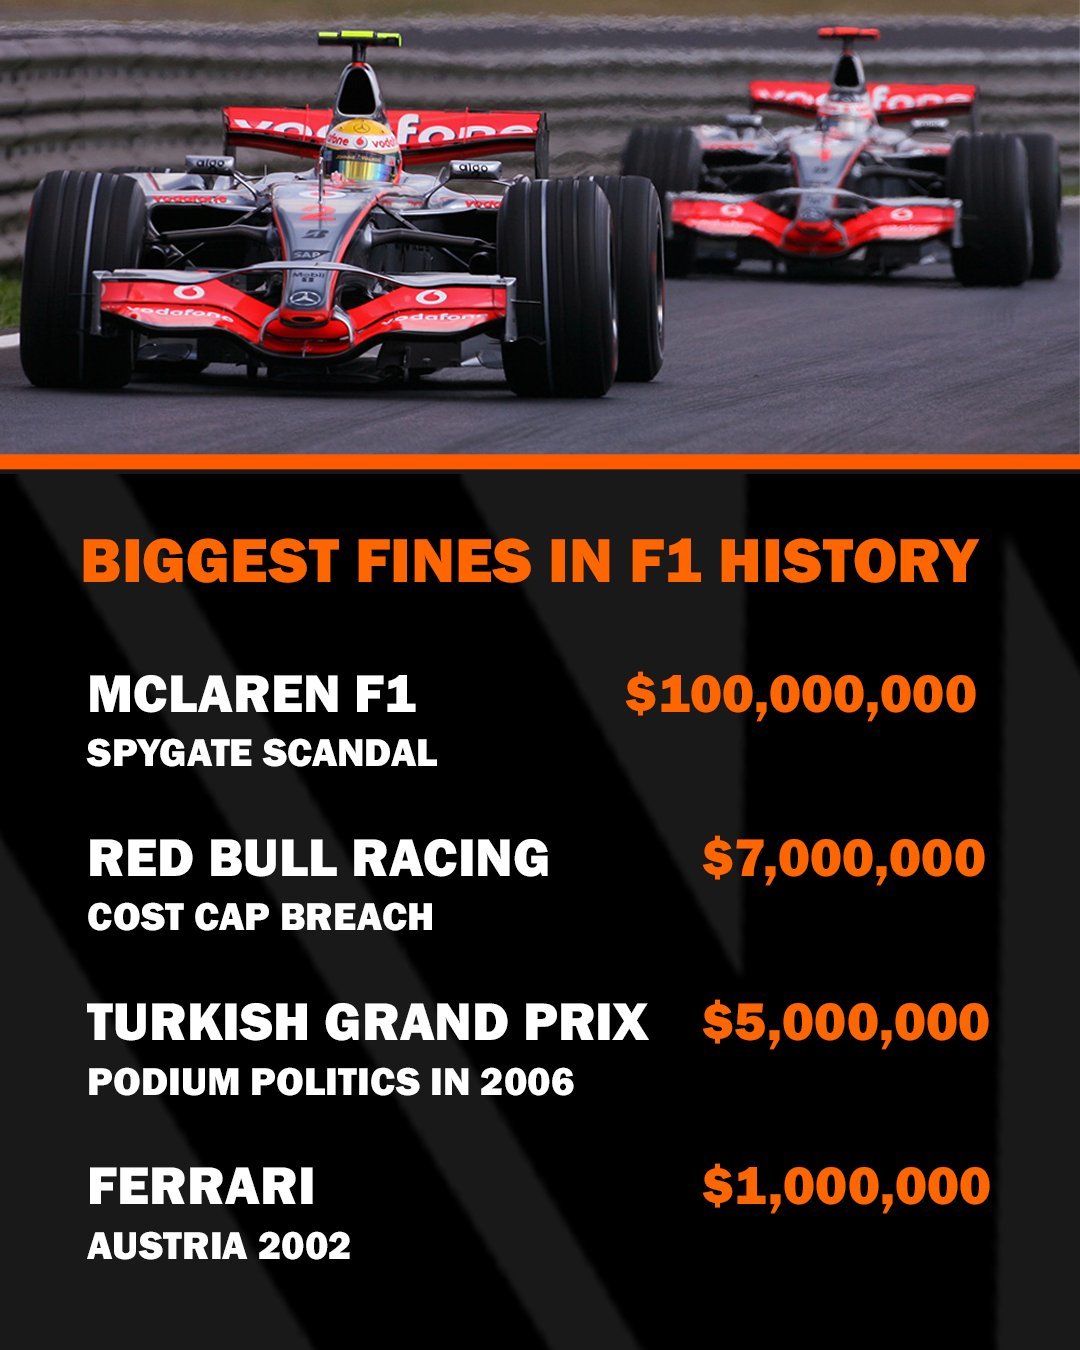 Ferrari y McLaren califican como poco estricto el castigo a Red Bull por romper lmite de costos